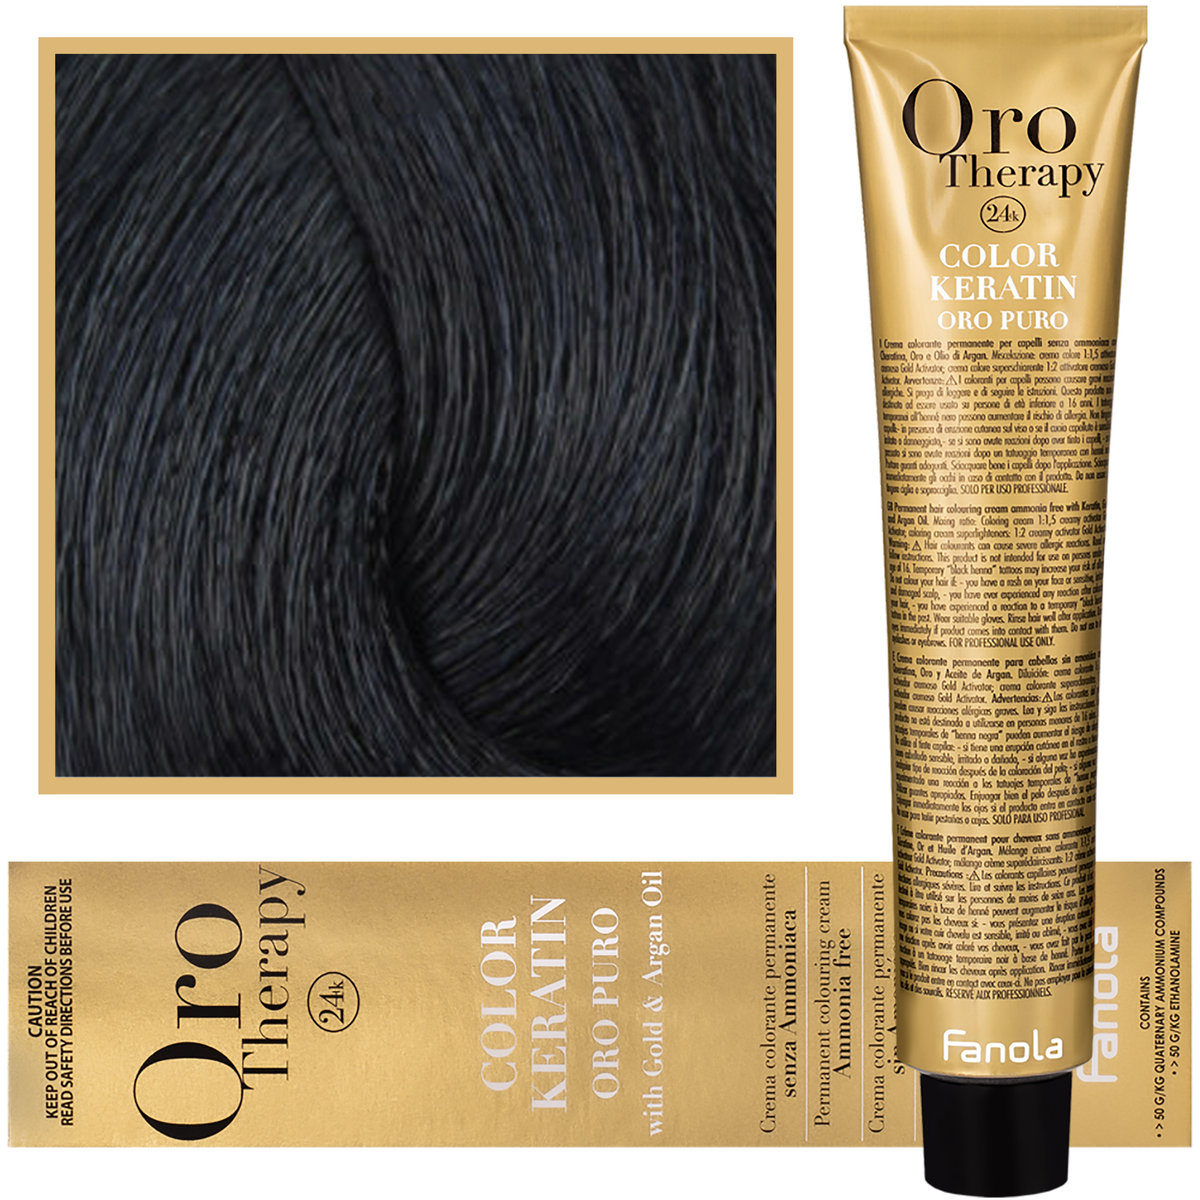 Zdjęcia - Farba do włosów Fanola, Oro Therapy, Color Keratin Oro Puro, 1,10, , 100 ml